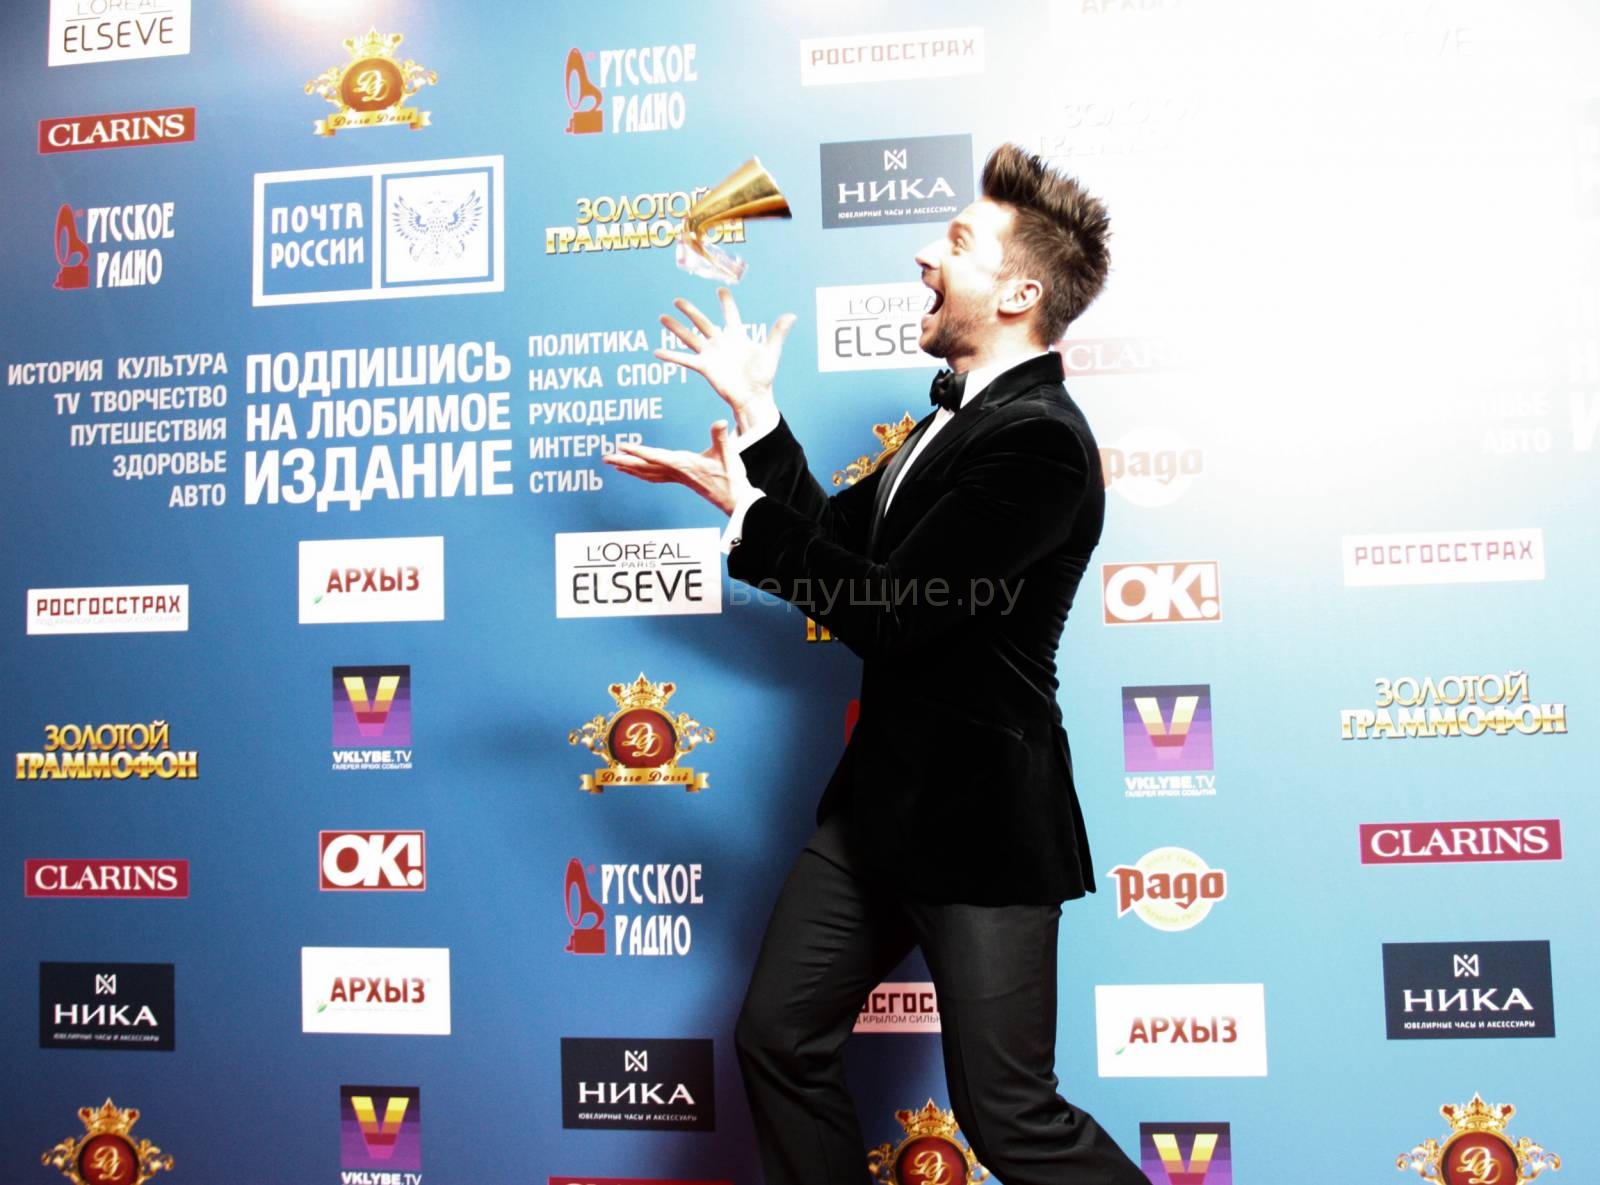 На фото - Сергей Лазарев на церемонии Золотой граммофон 2015